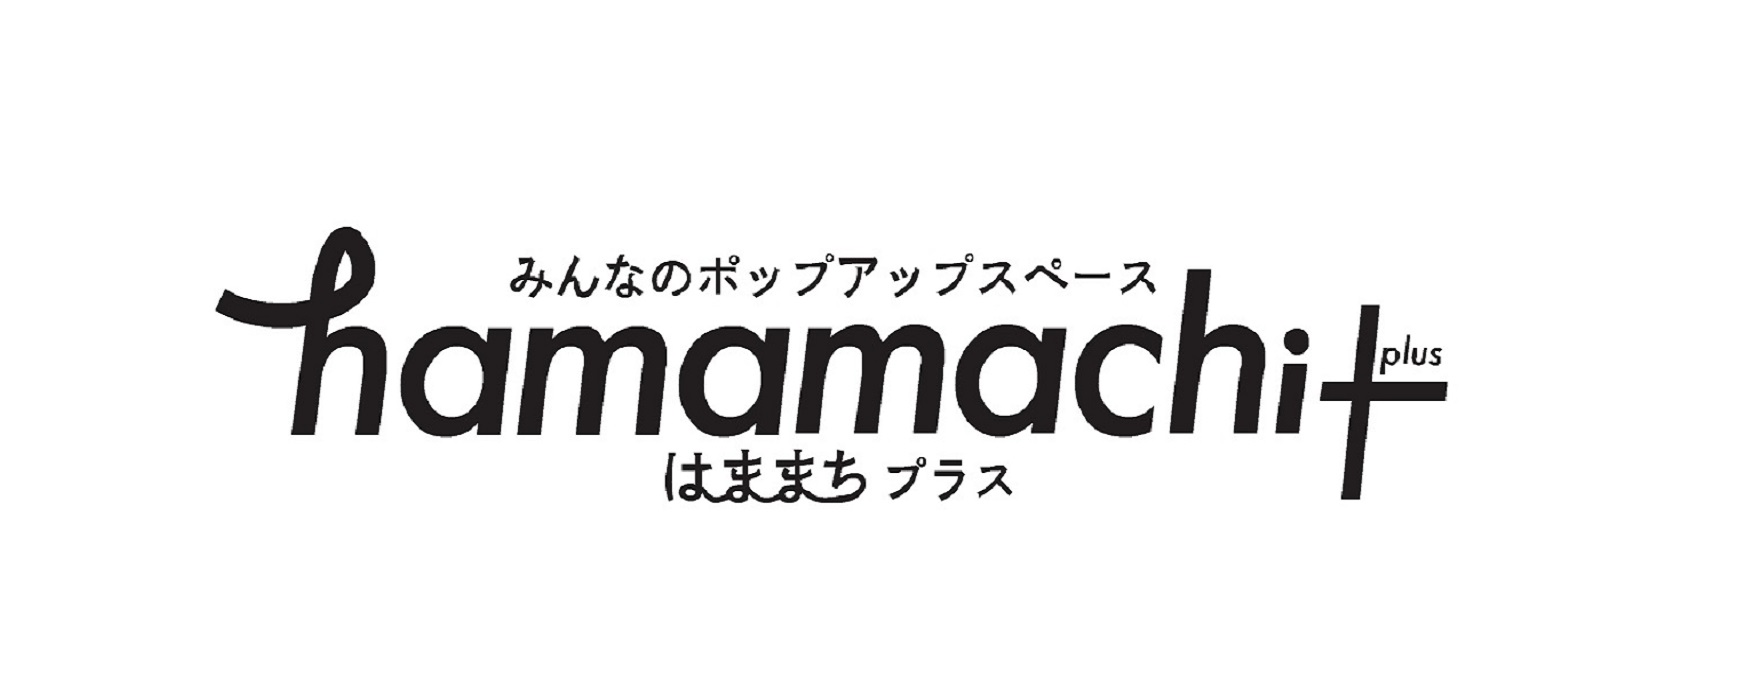 みんなのポップアップスペース hamamachi+